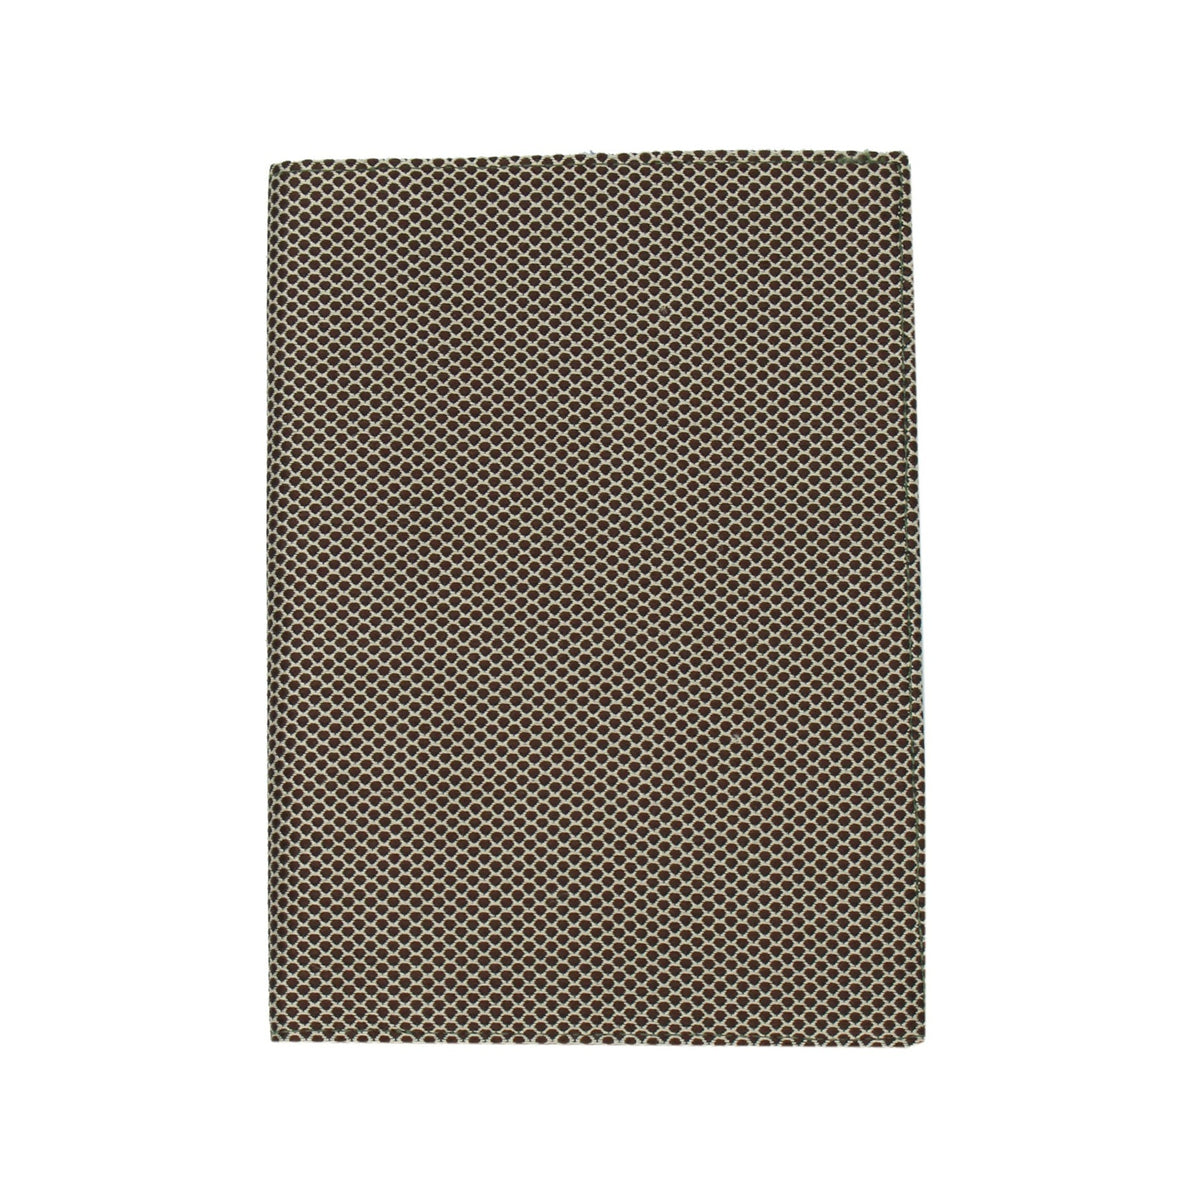 Silk document holder light and dark brown pattern